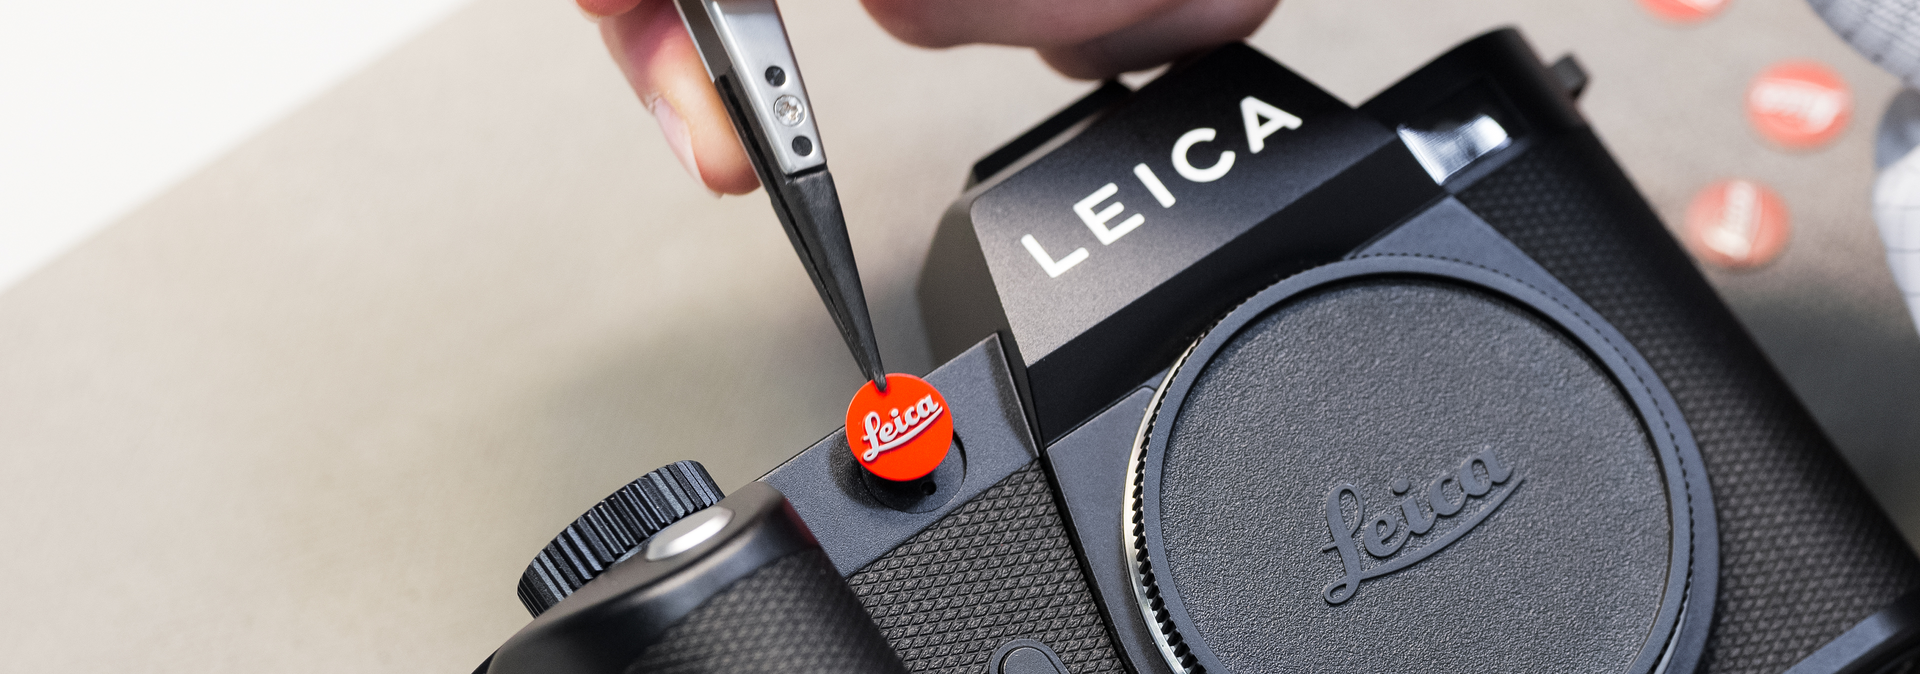 Made by Leica | Leica Camera US